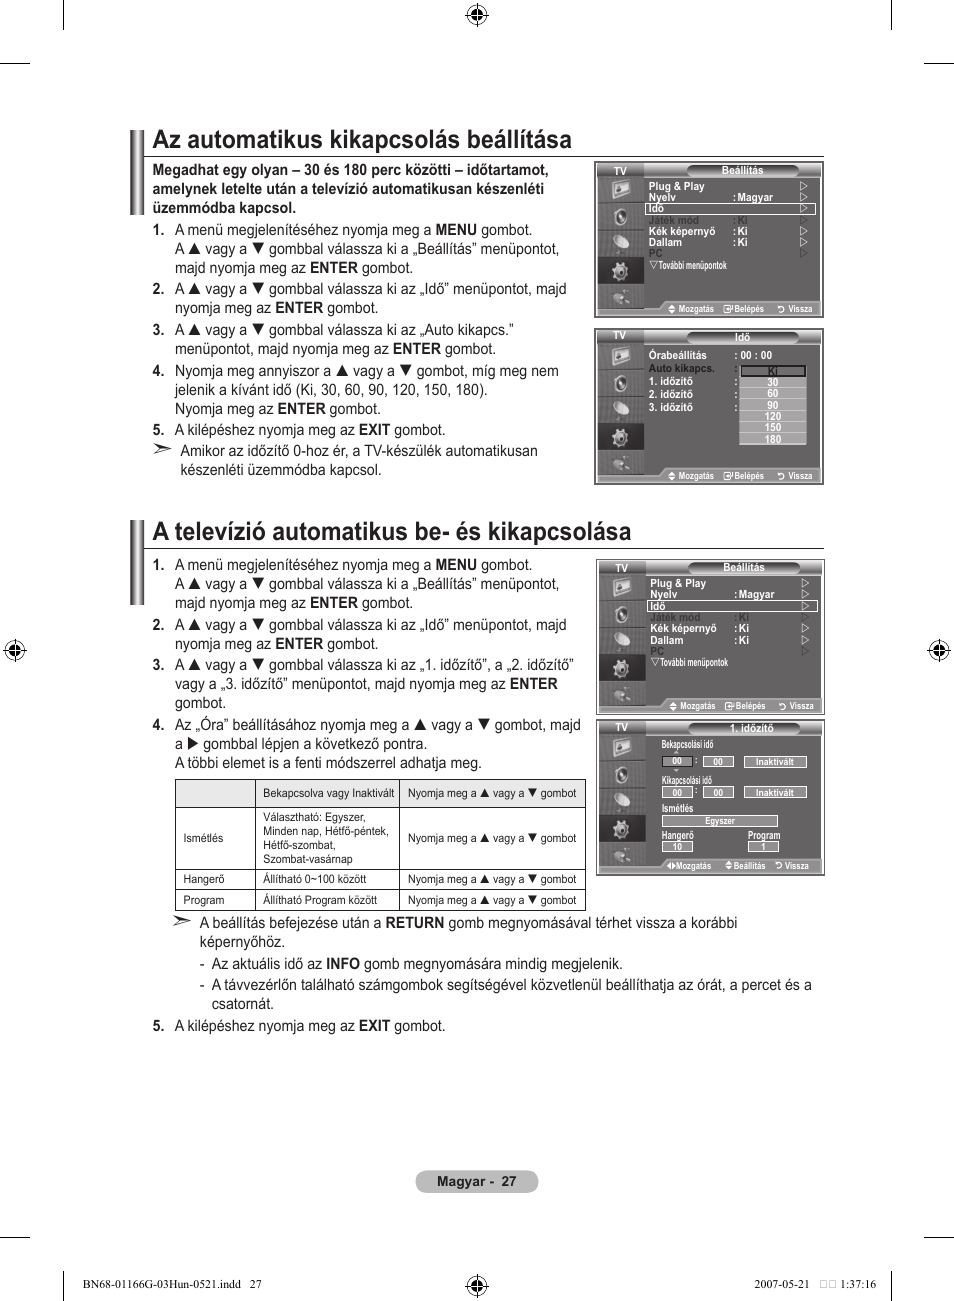 Az automatikus kikapcsolás beállítása, A televízió automatikus be- és  kikapcsolása | Samsung LE23R81B User Manual | Page 297 / 463